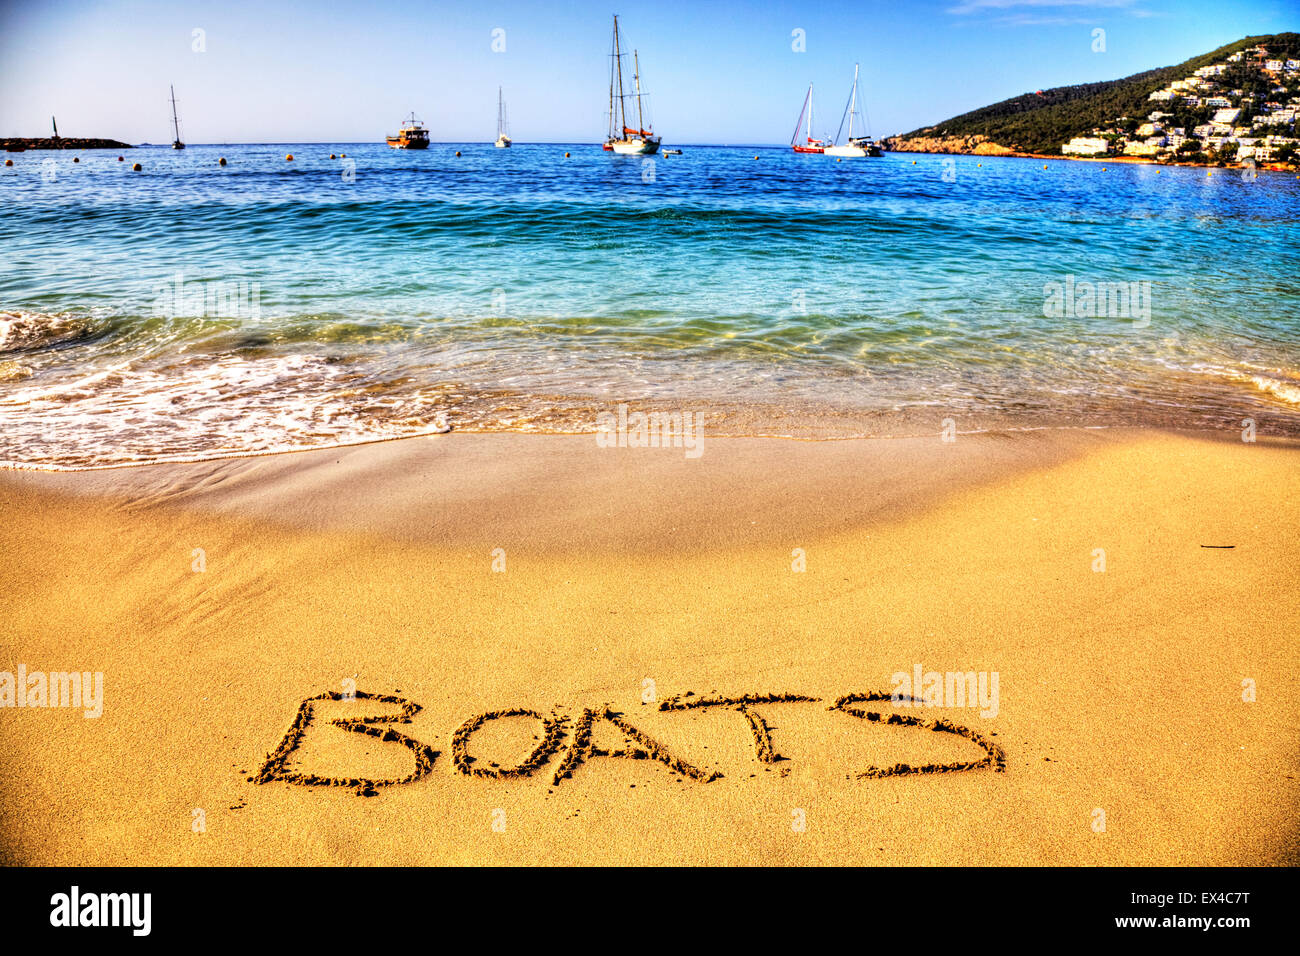 Boote Boot Bootfahren Wort in Sand geschrieben am Strand Spaß resort See Küste Küste Urlaub Ferien Reisen Reise Urlaub Ibiza Stockfoto